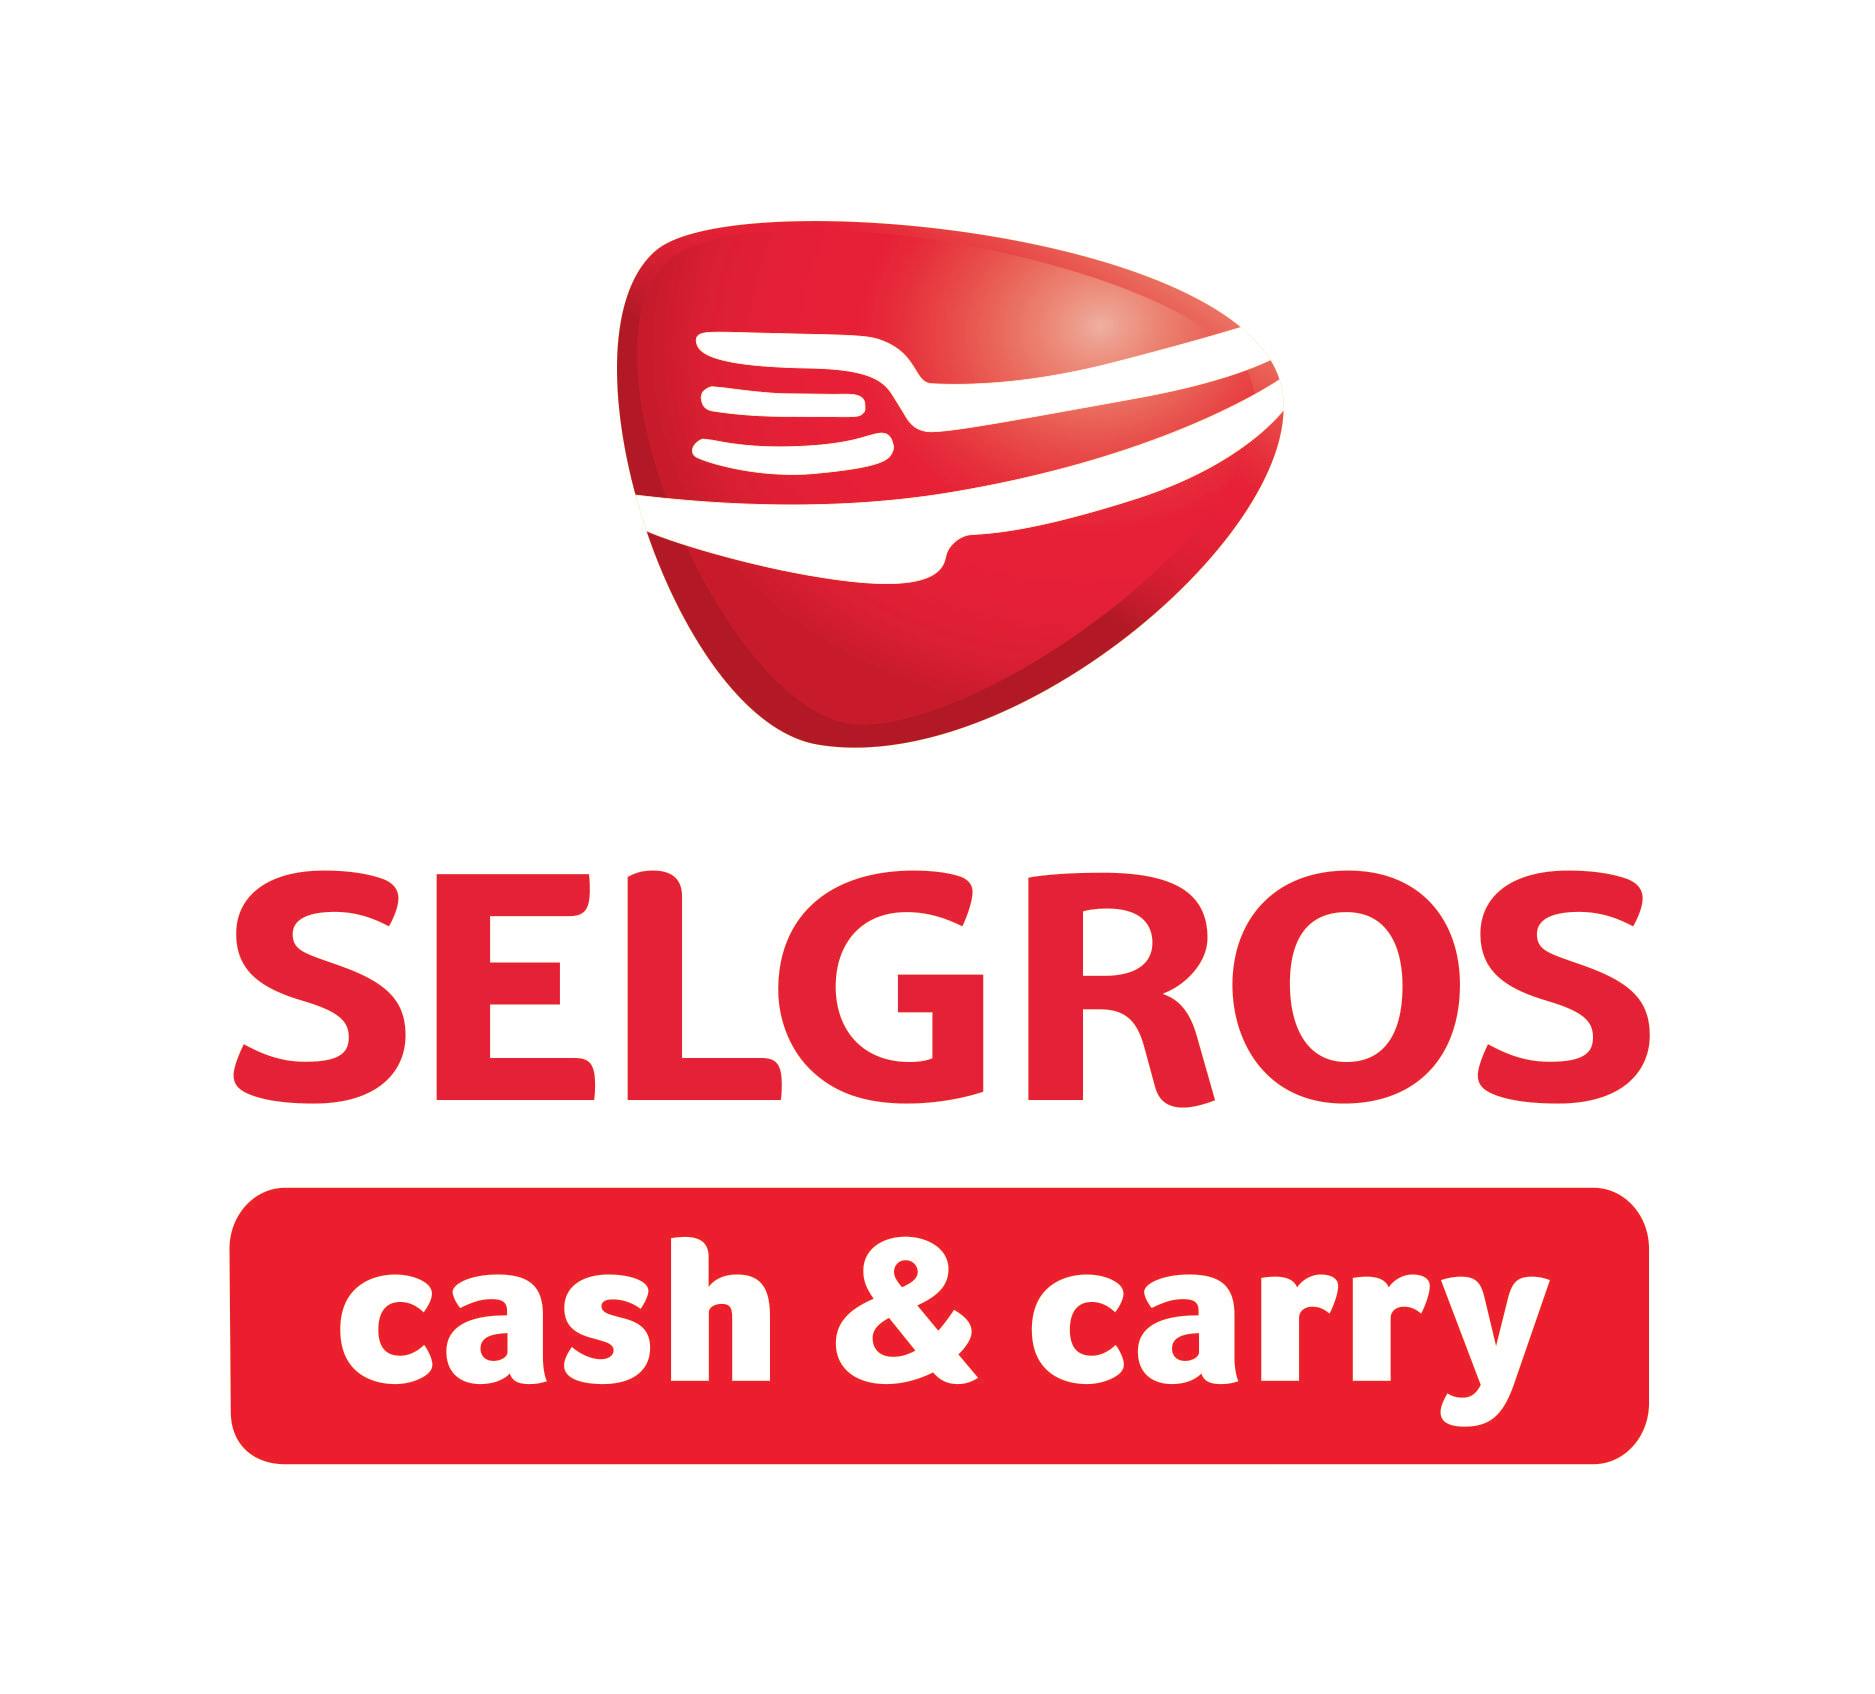 SELGROS  cash & carry